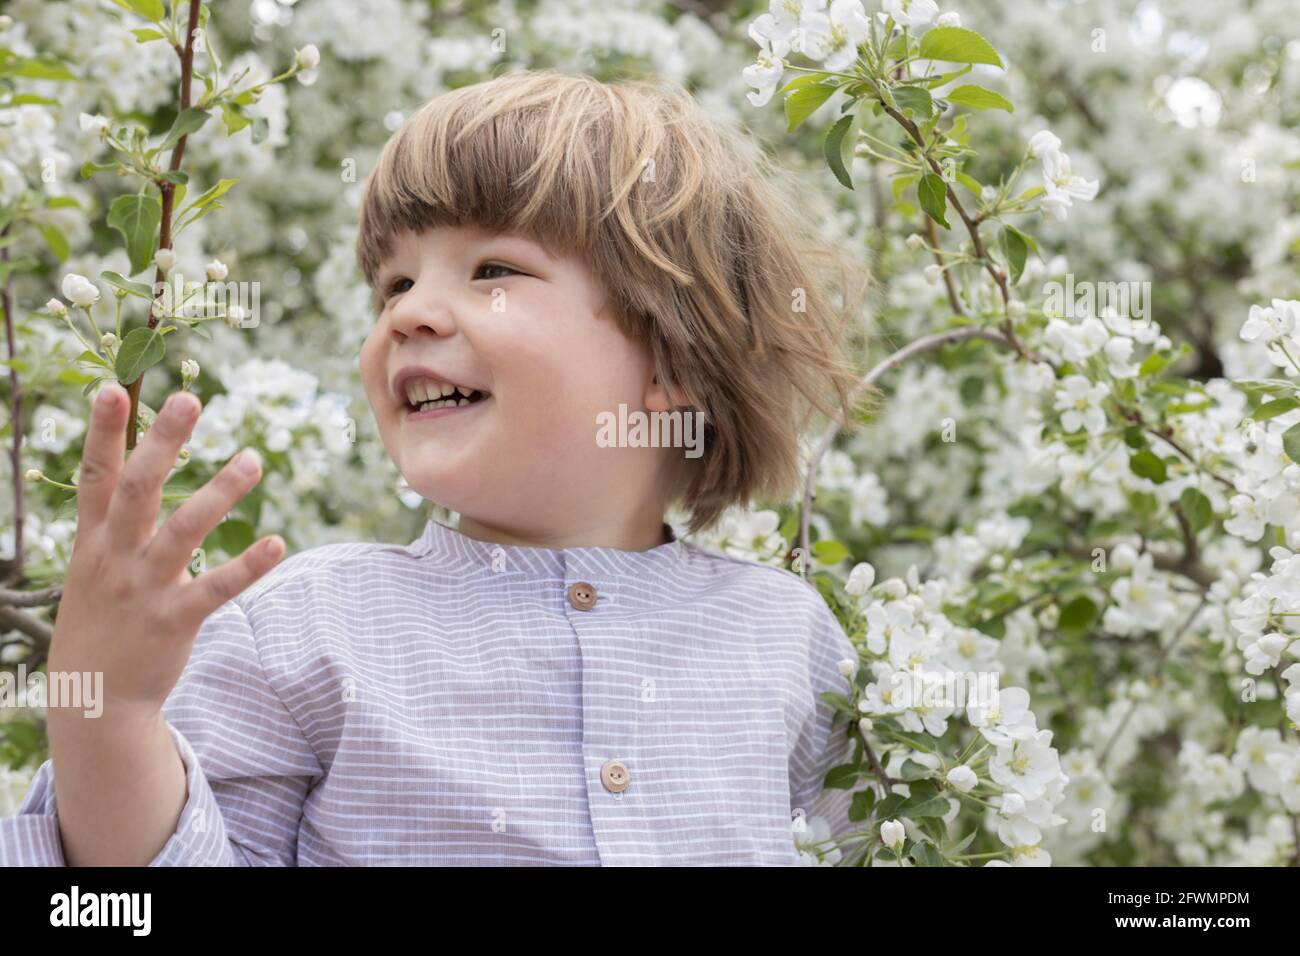 Primo piano sorridente bambino tra fiori bianchi che fioriscono nel giardino Foto Stock